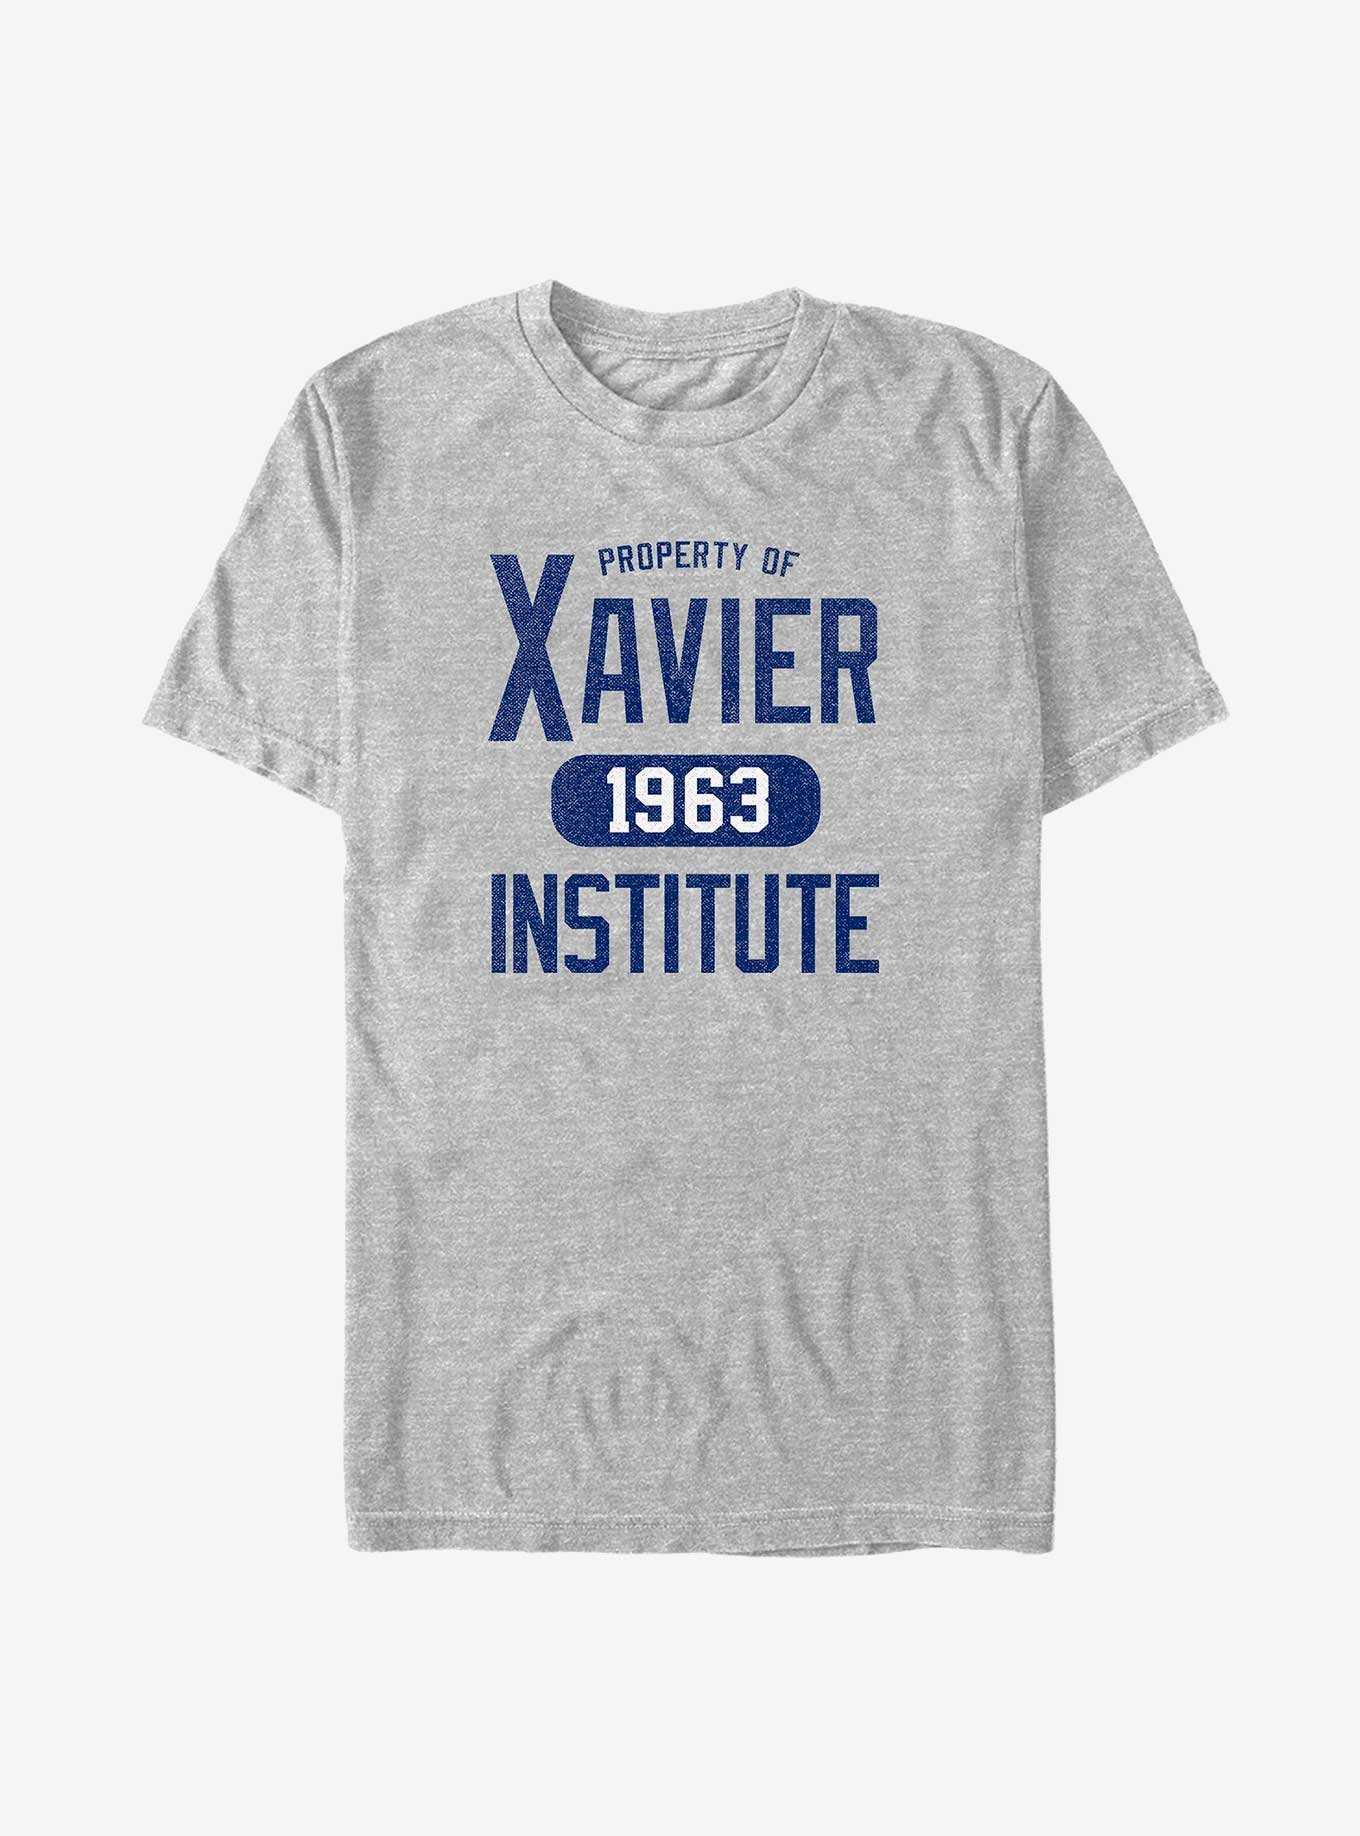 Marvel X-Men Xavier Institute Stainless Steel Water Bottle - BLACK